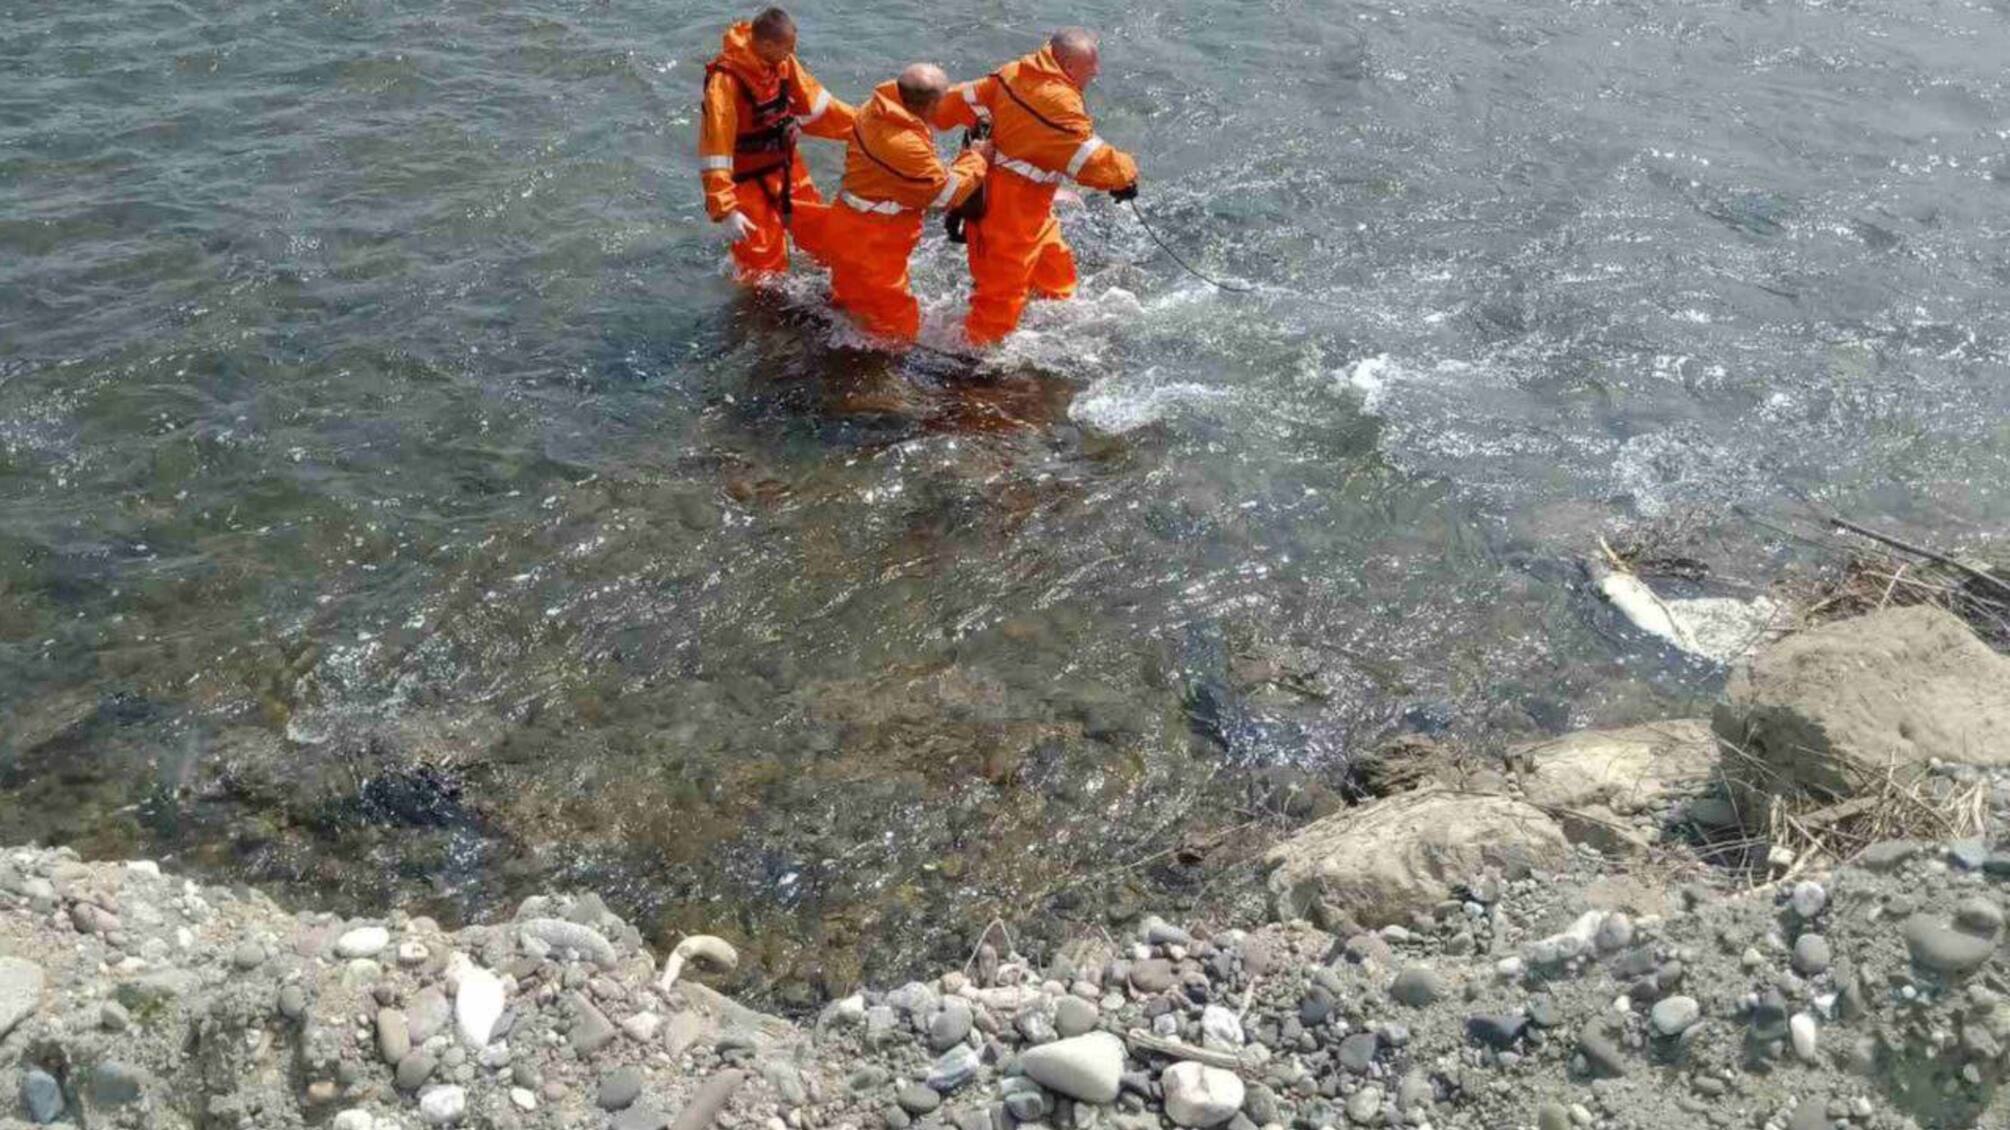 Шесть утопленников обнаружено сегодня в реке Тиса, — журналист Глагола